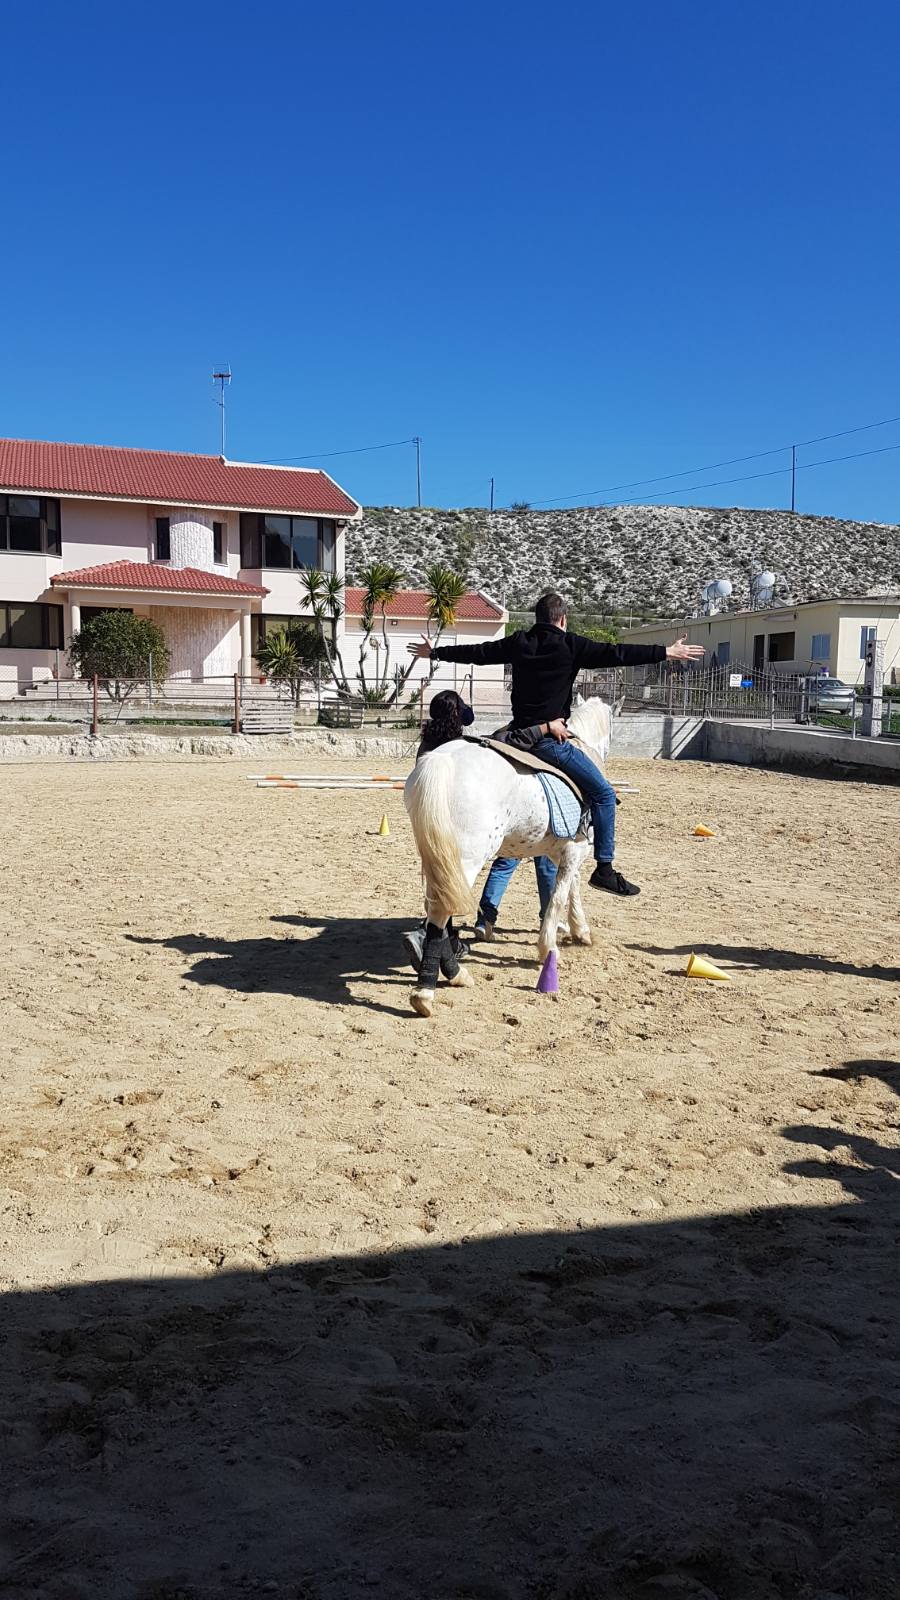 Ιπποθεραπεία- Εκπαιδευόμενος σε Άλογο με τα Χέρια Πλάγια